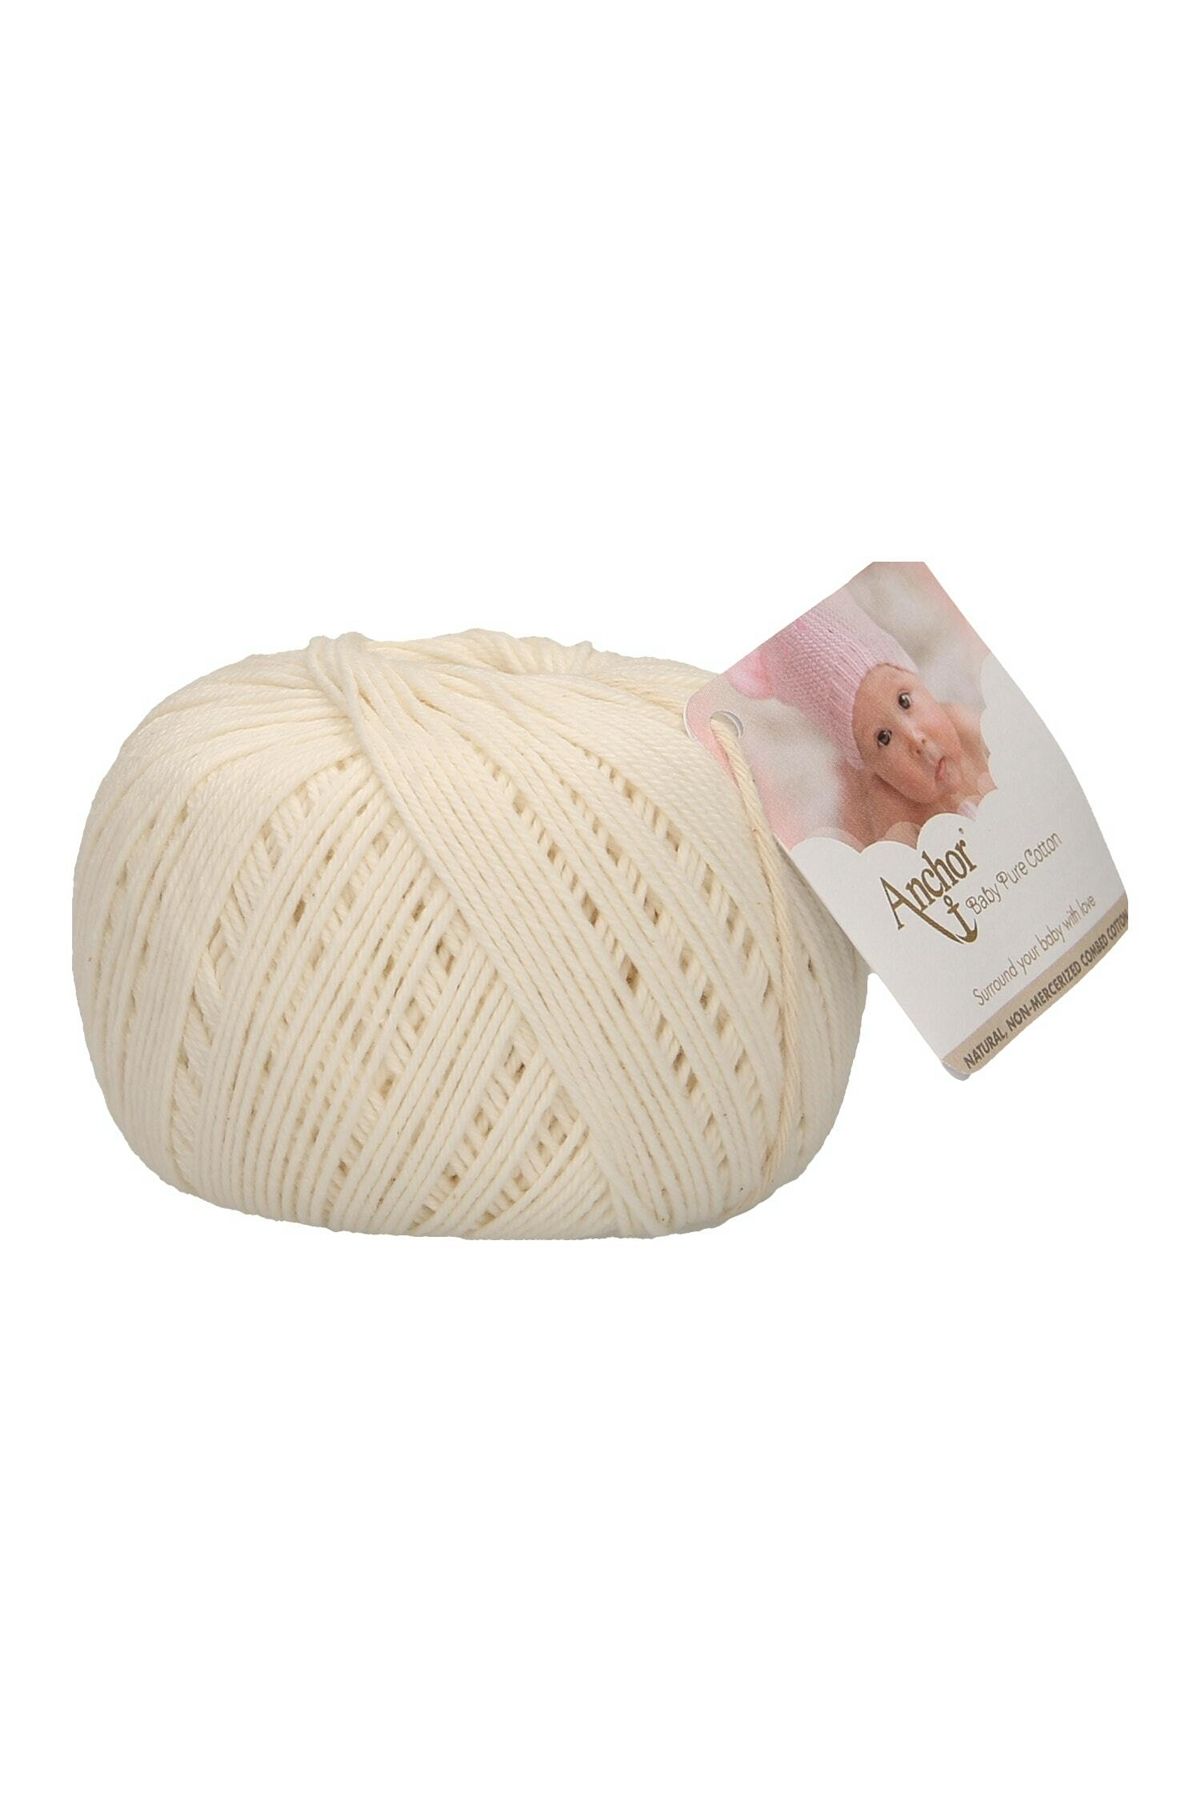 Anchor Baby Pure Cotton El Örgü İpi 50 gr